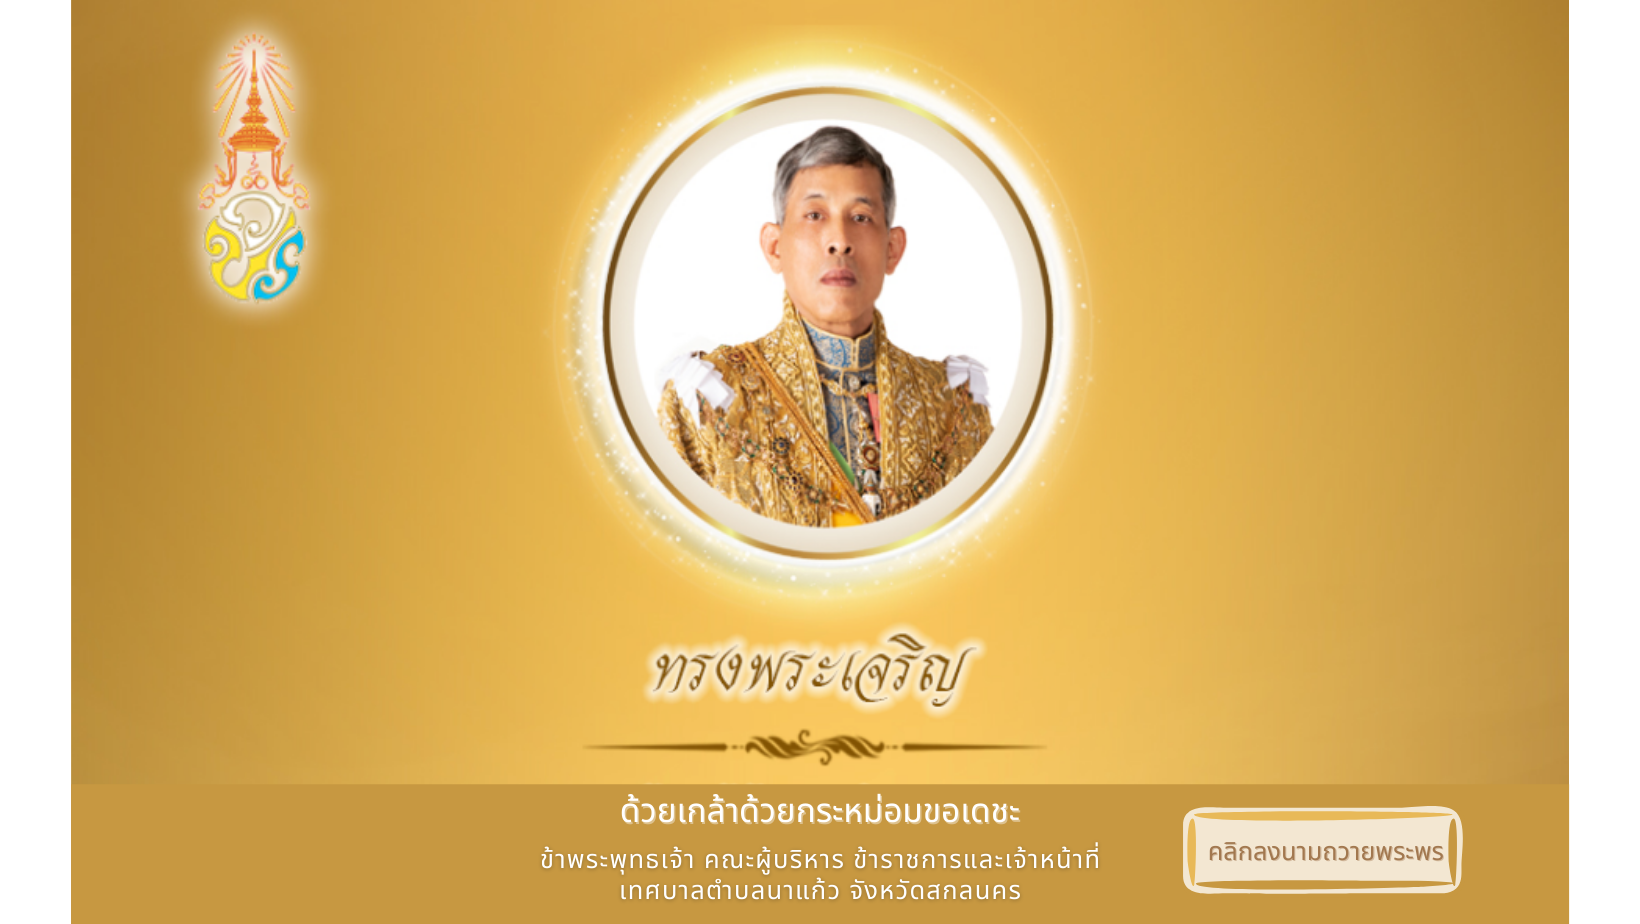 เทศบาลตำบลนาแก้ว ขอเชิญประชาชนชาวไทย ร่วมลงนามถวายพระพร เนื่องในวันฉัตรมงคล 4 พฤษภาคม 2565